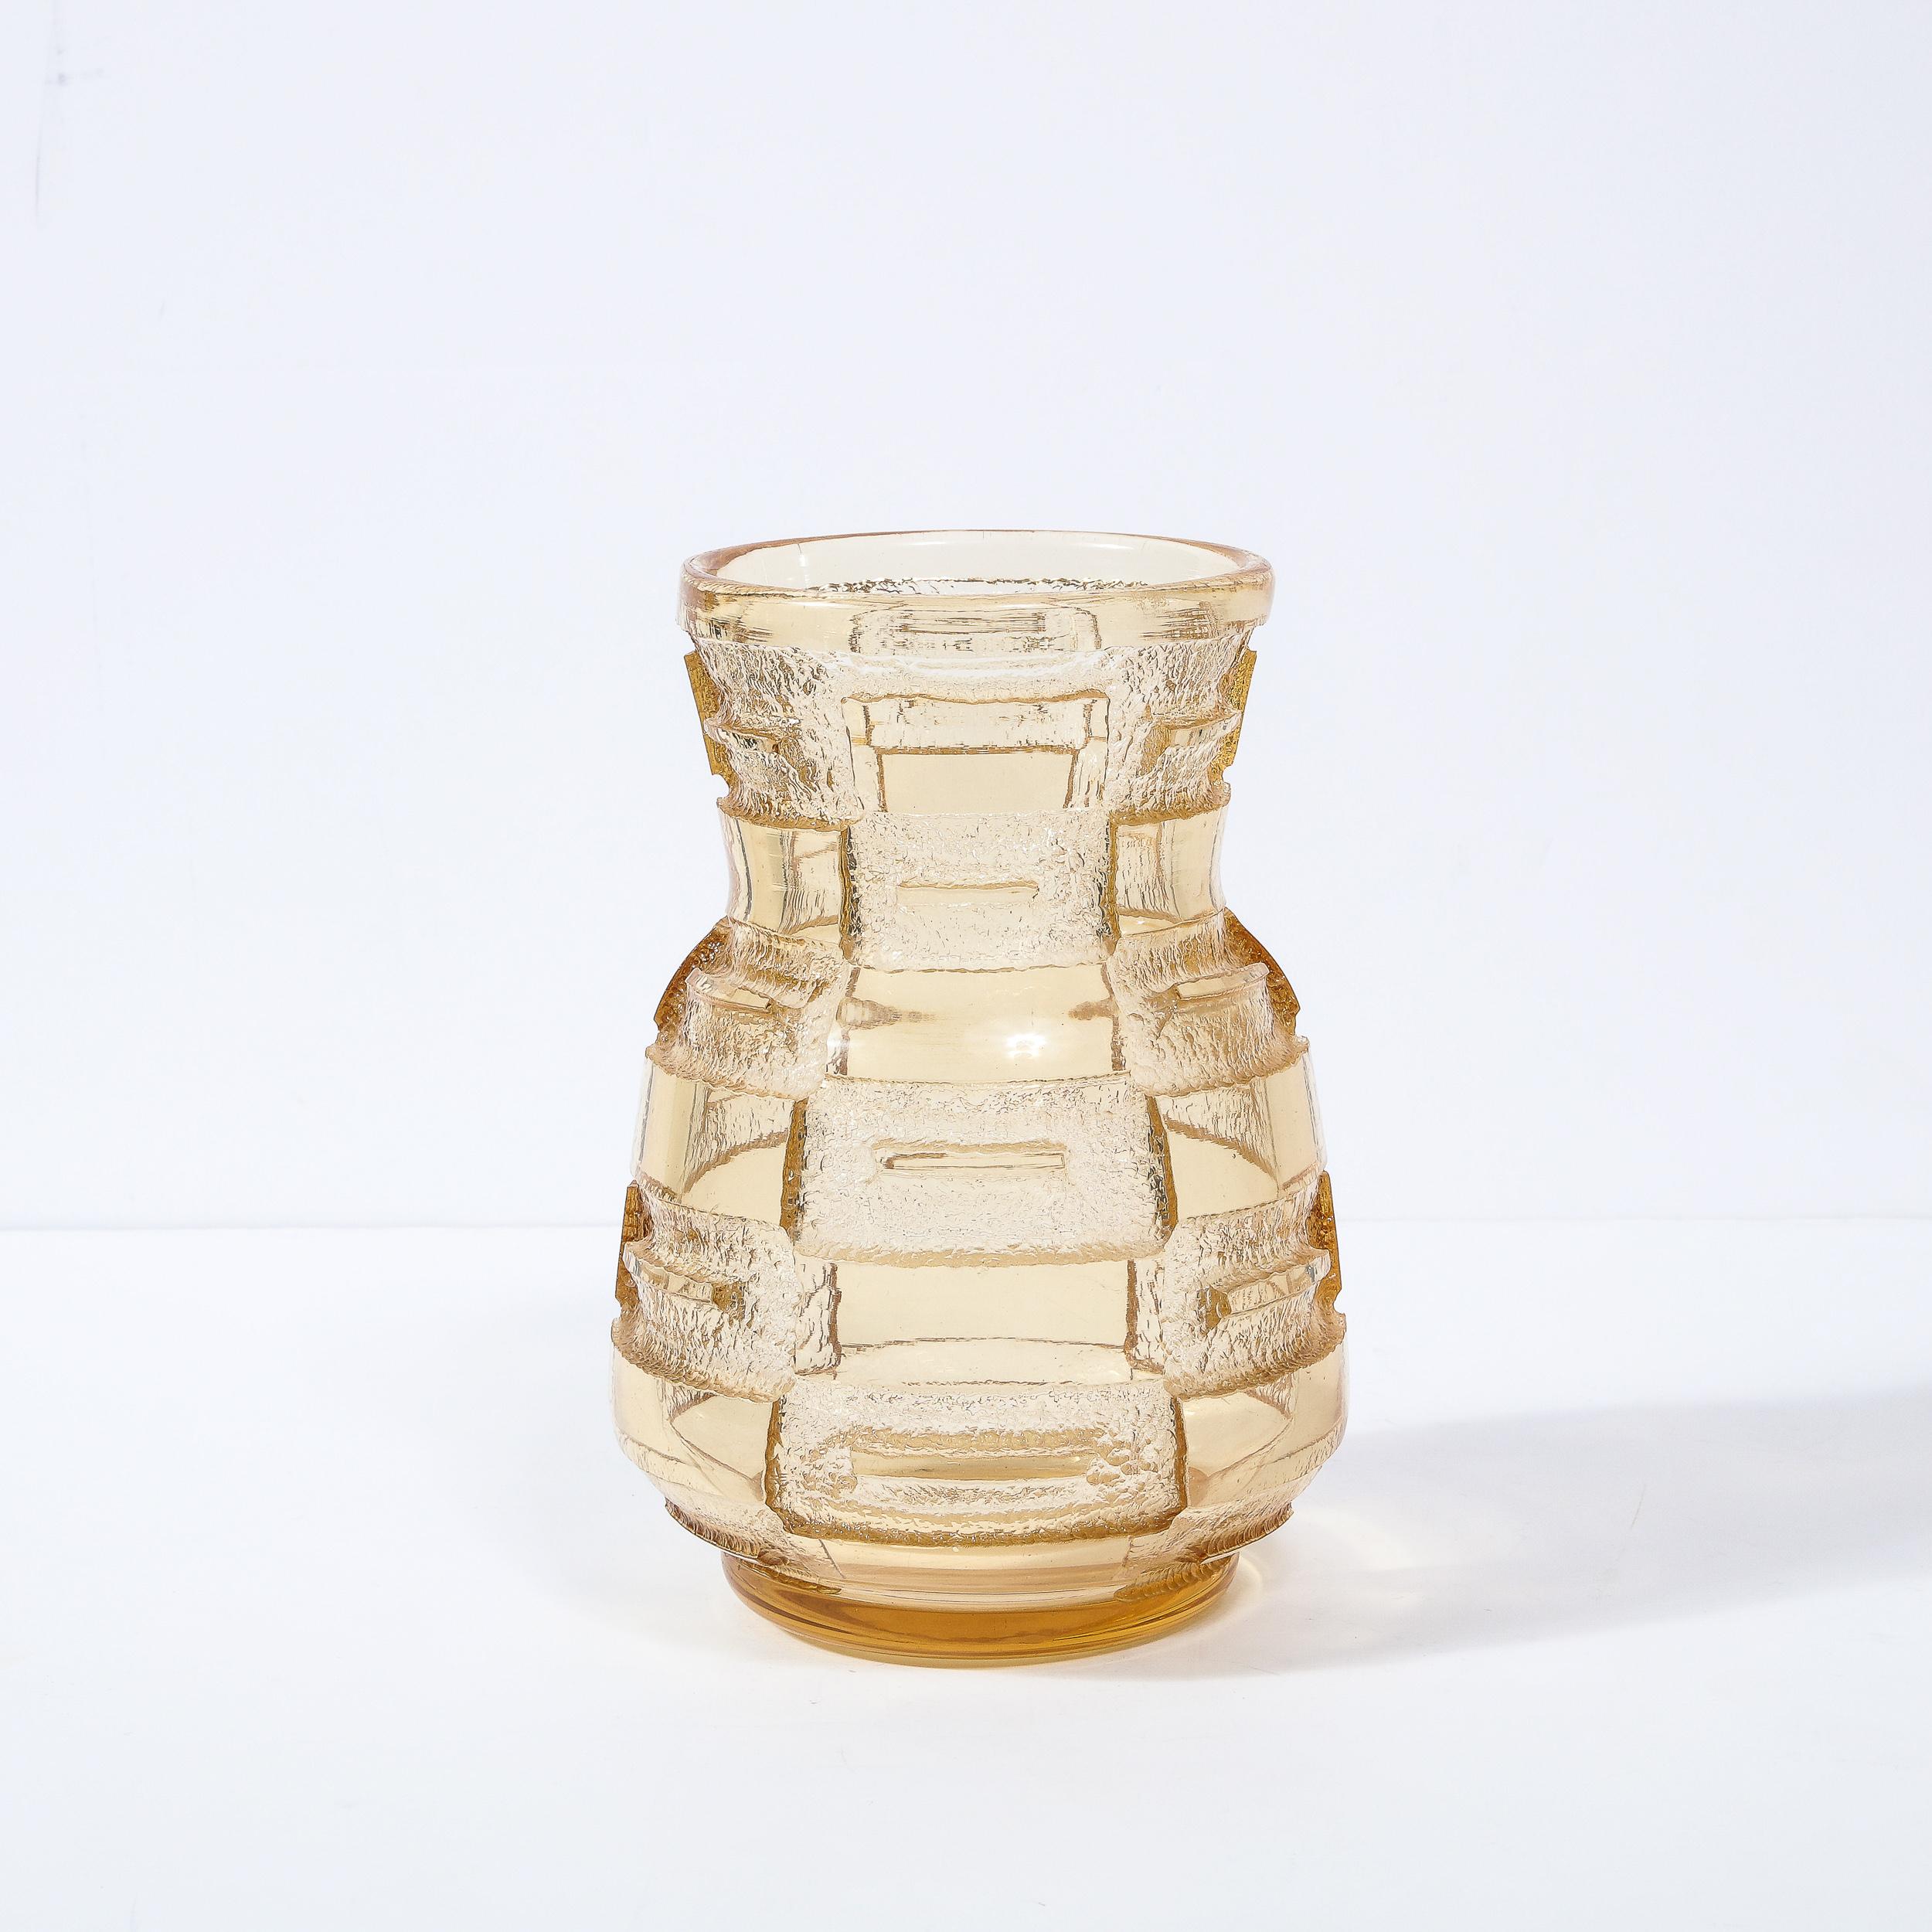 Diese elegante und raffinierte Art Déco-Vase/-Gefäß wurde in Nancy, Frankreich, vom angesehenen Studio Daum realisiert - dem wohl prestigeträchtigsten und meistgesuchten Atelier der Zeit um 1930. Das Stück hat eine runde Basis, die sich dramatisch